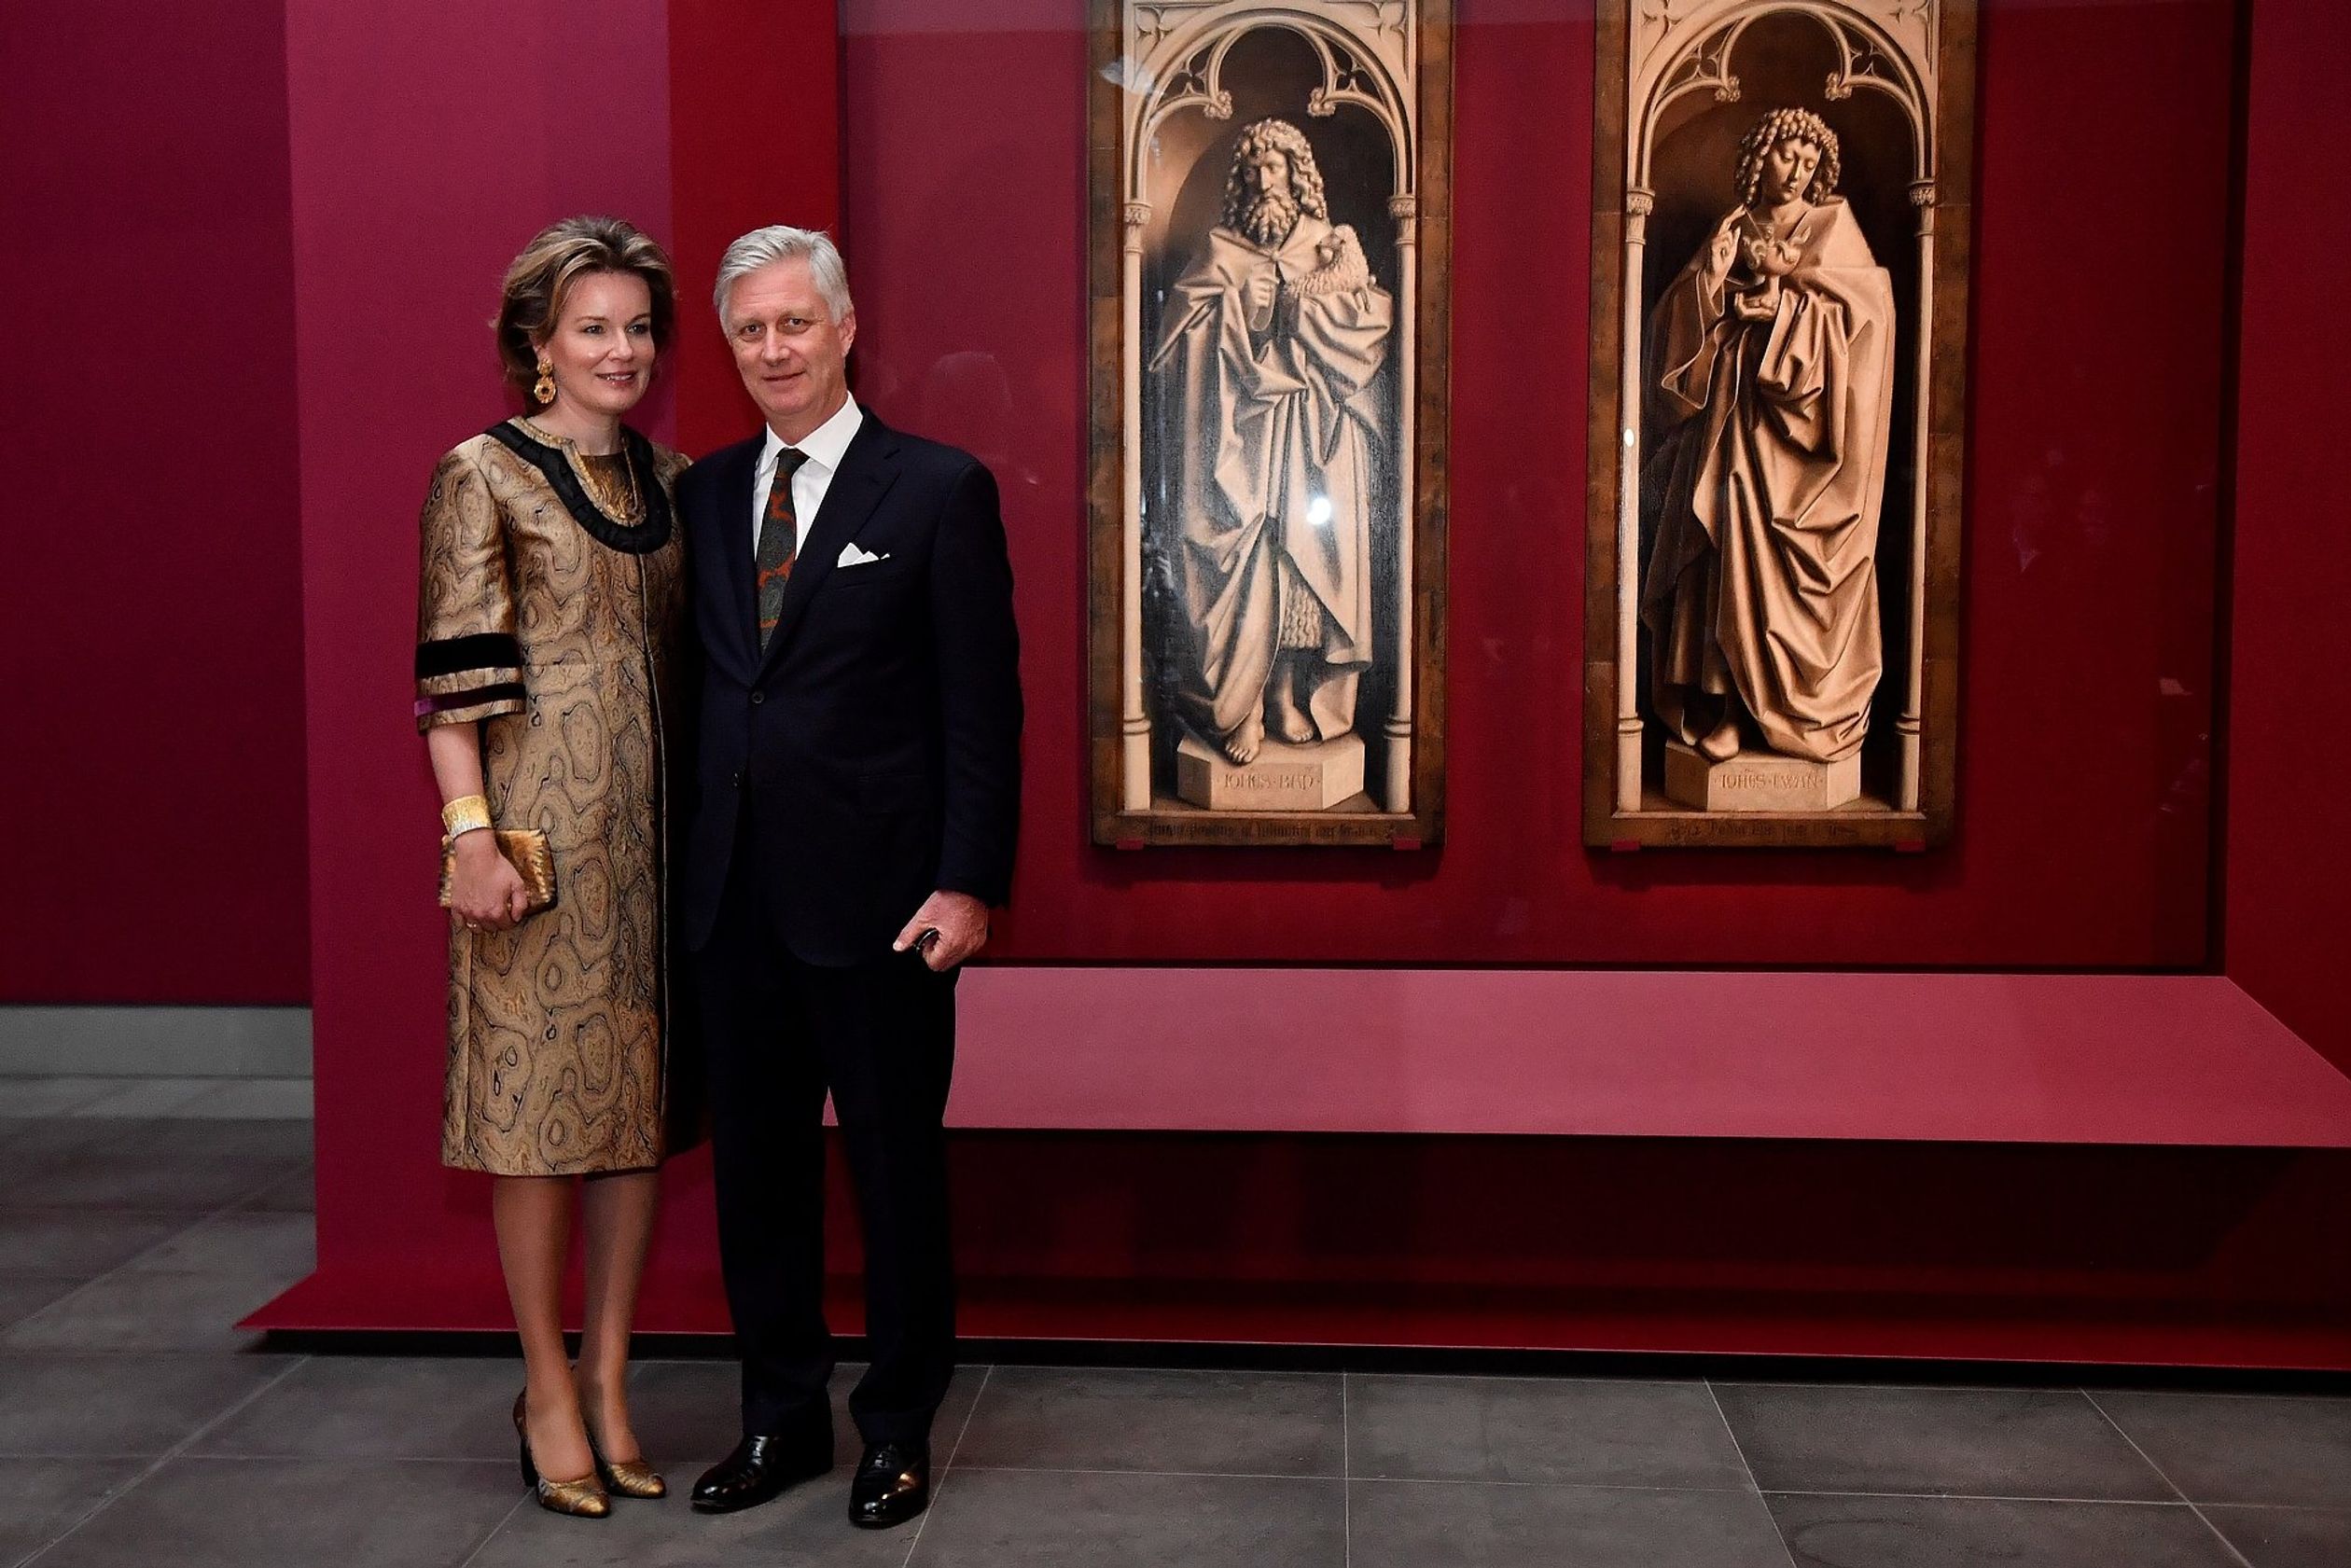 Op 30 januari gaan koningin Mathilde en koning Filip naar de opening van de 'Van Eyck. Een optische